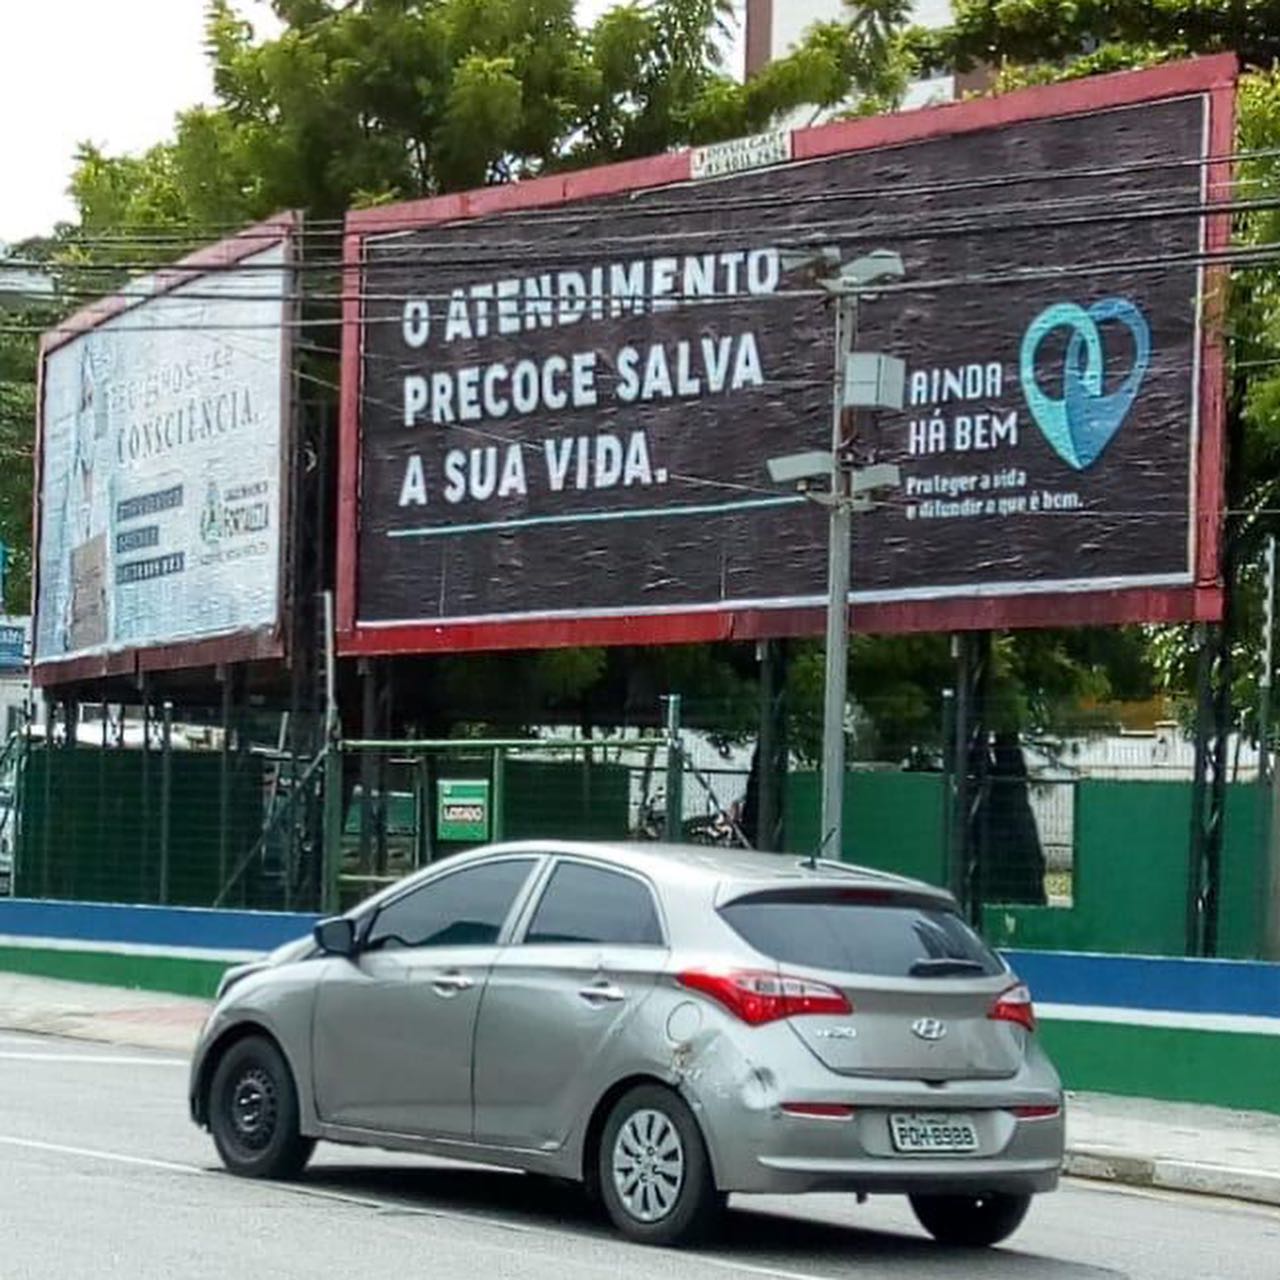 movimento de medicos que mistura aborto com cloroquina tem ligacoes com ministerio da saude img2